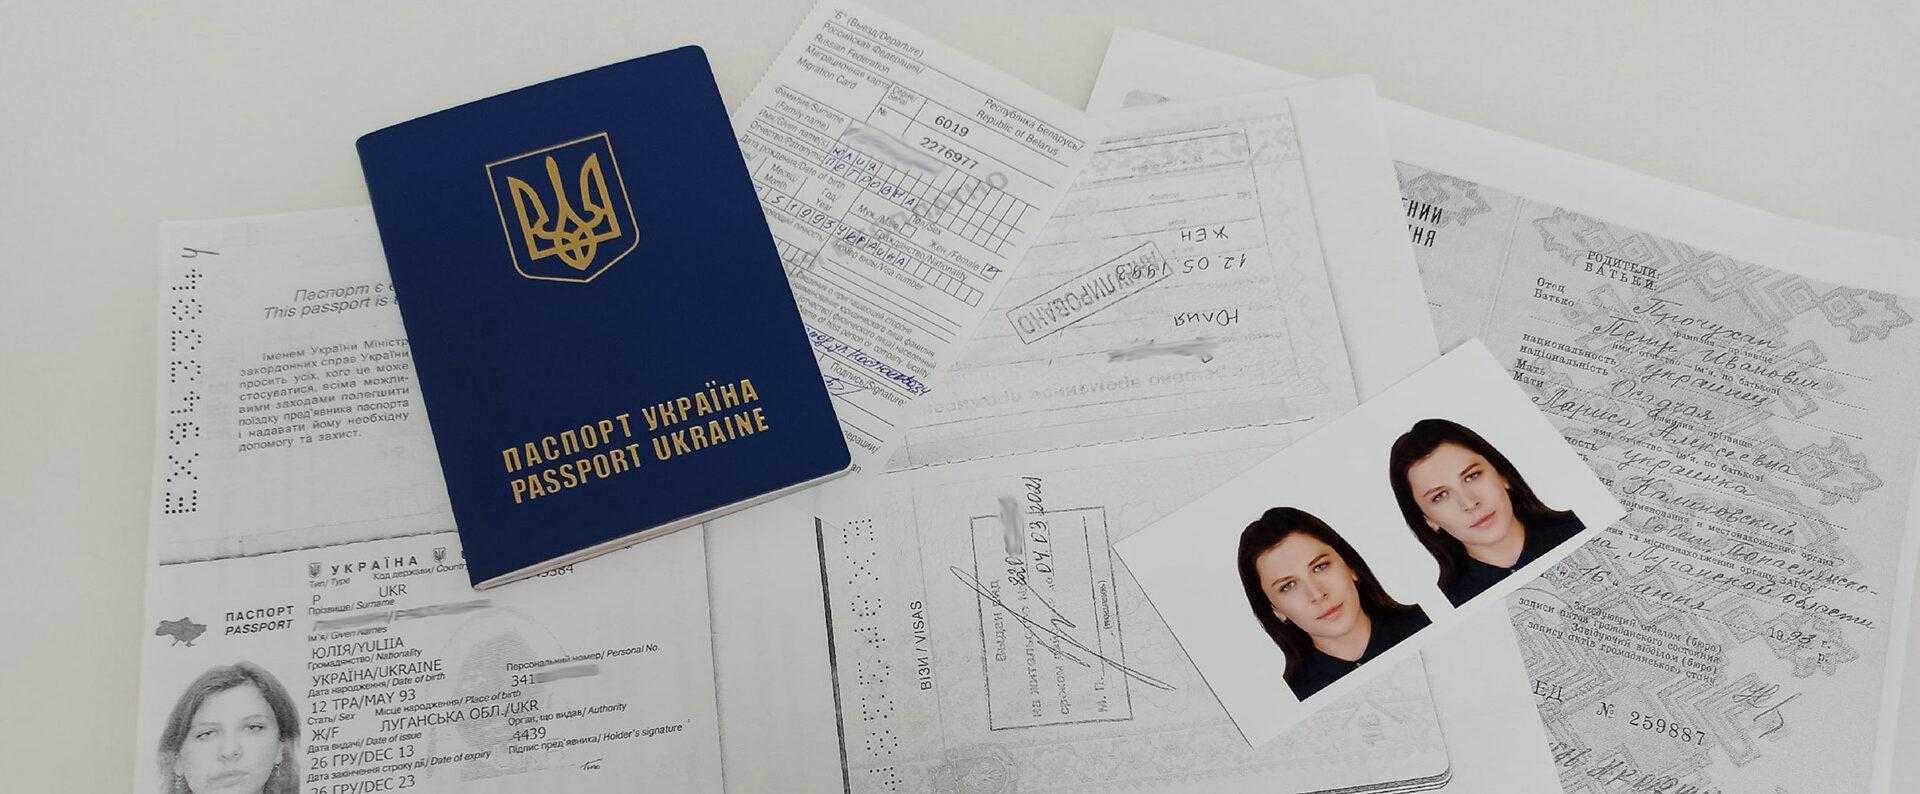 Получить вид на жительство украины. Гражданство в документах. Вид на жительство для граждан Украины. РВП вид на жительство.